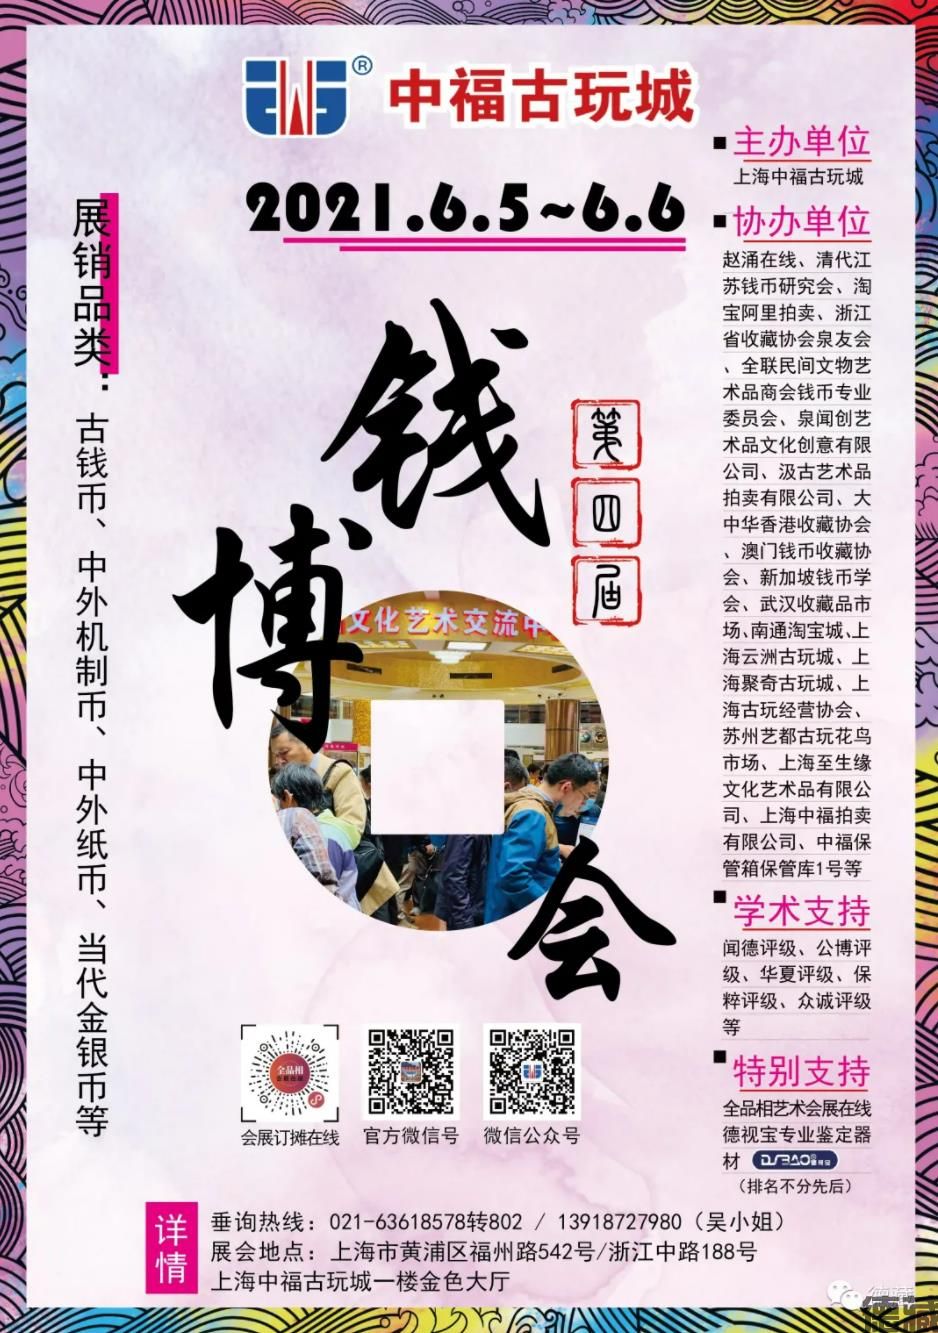 德藏将参展2021年6月5-6日上海中福全国钱币博览会